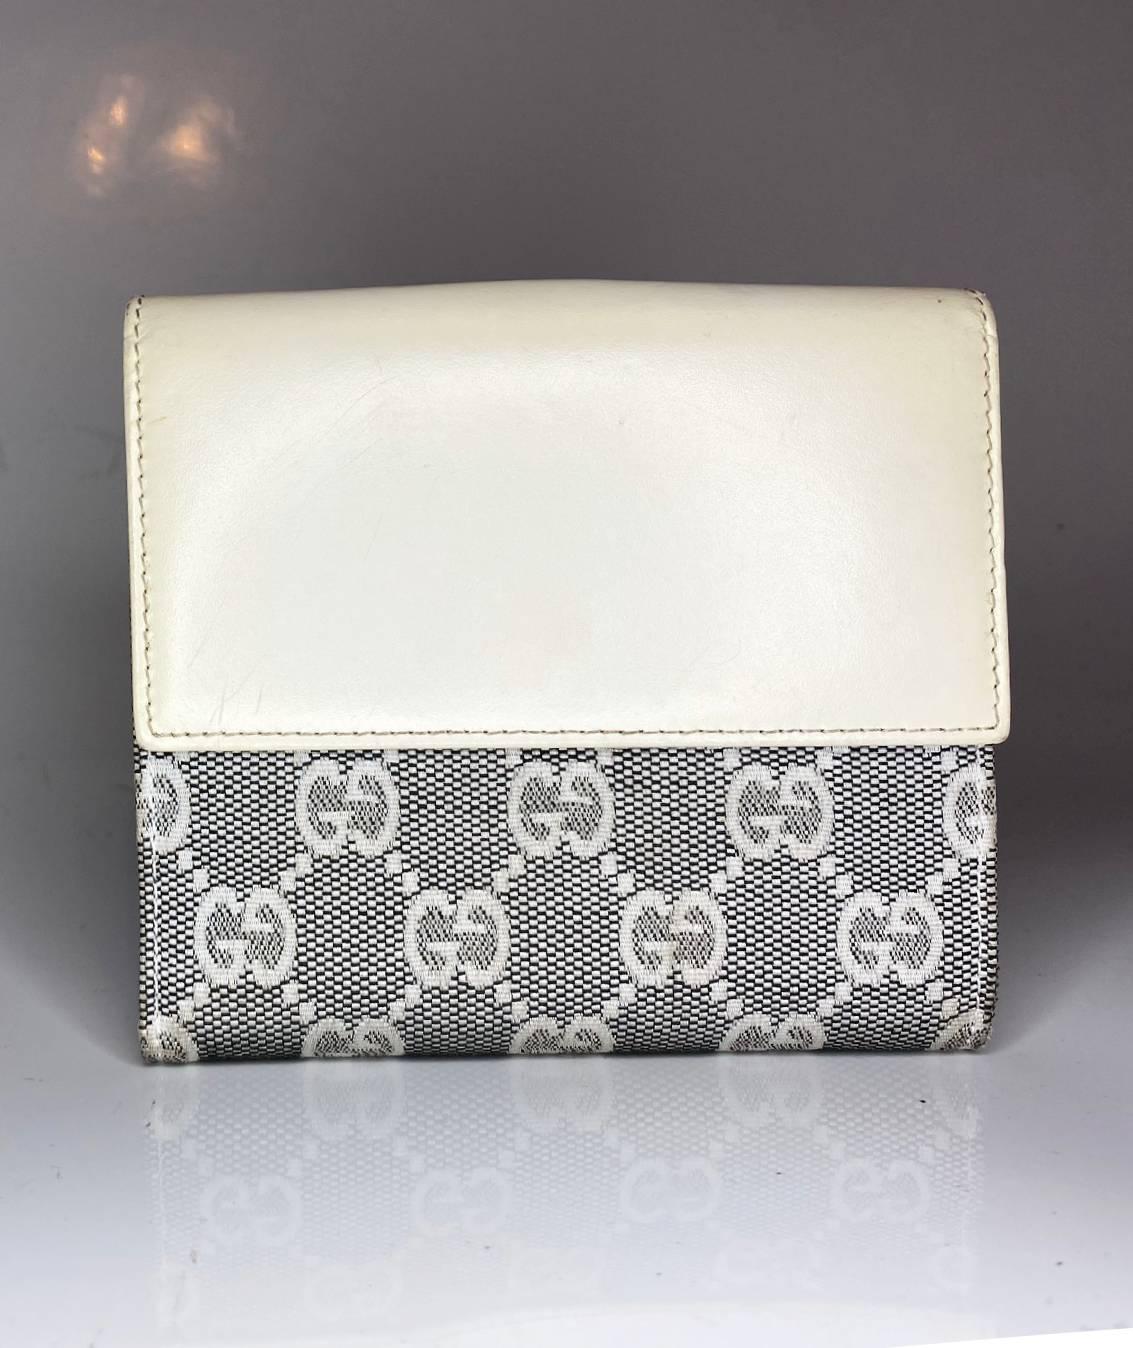 Ce portefeuille Gucci Jackie 1961 présente un design classique en cuir canvas monogramme gris, une fermeture à l'avant et plusieurs compartiments pour les cartes et la monnaie. Conçu pour les styles de vie modernes, le portefeuille dégage une